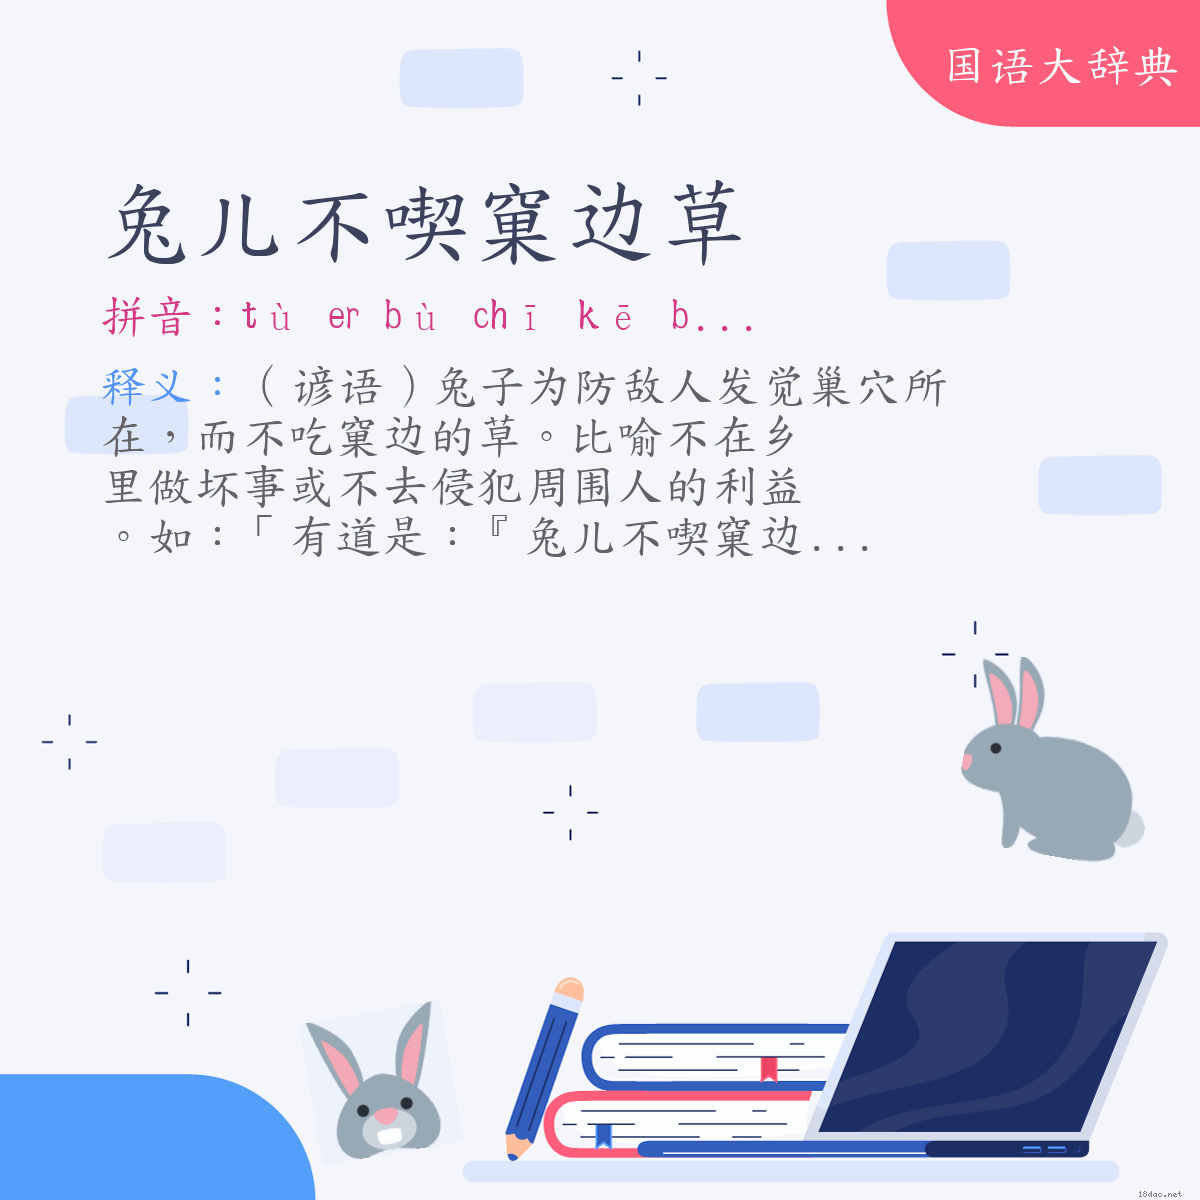 词语:兔儿不喫窠边草 (注音:ㄊㄨˋ　ㄦ　ㄅㄨˋ　ㄔ　ㄎㄜ　ㄅㄧㄢ　ㄘㄠˇ)